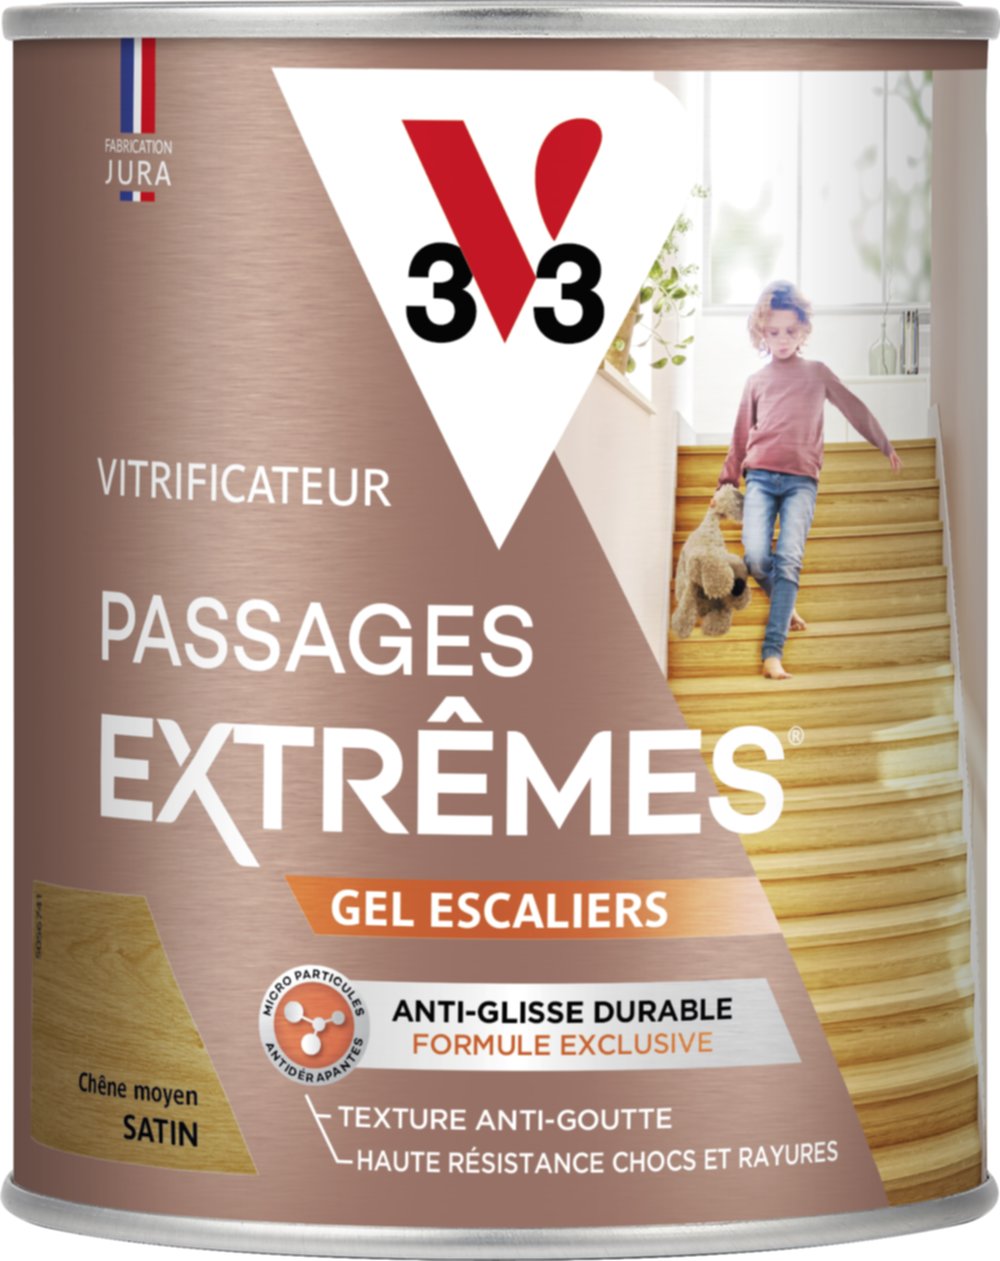 Vitrificateur gel escalier chêne moyen satin 0,75 L - V33